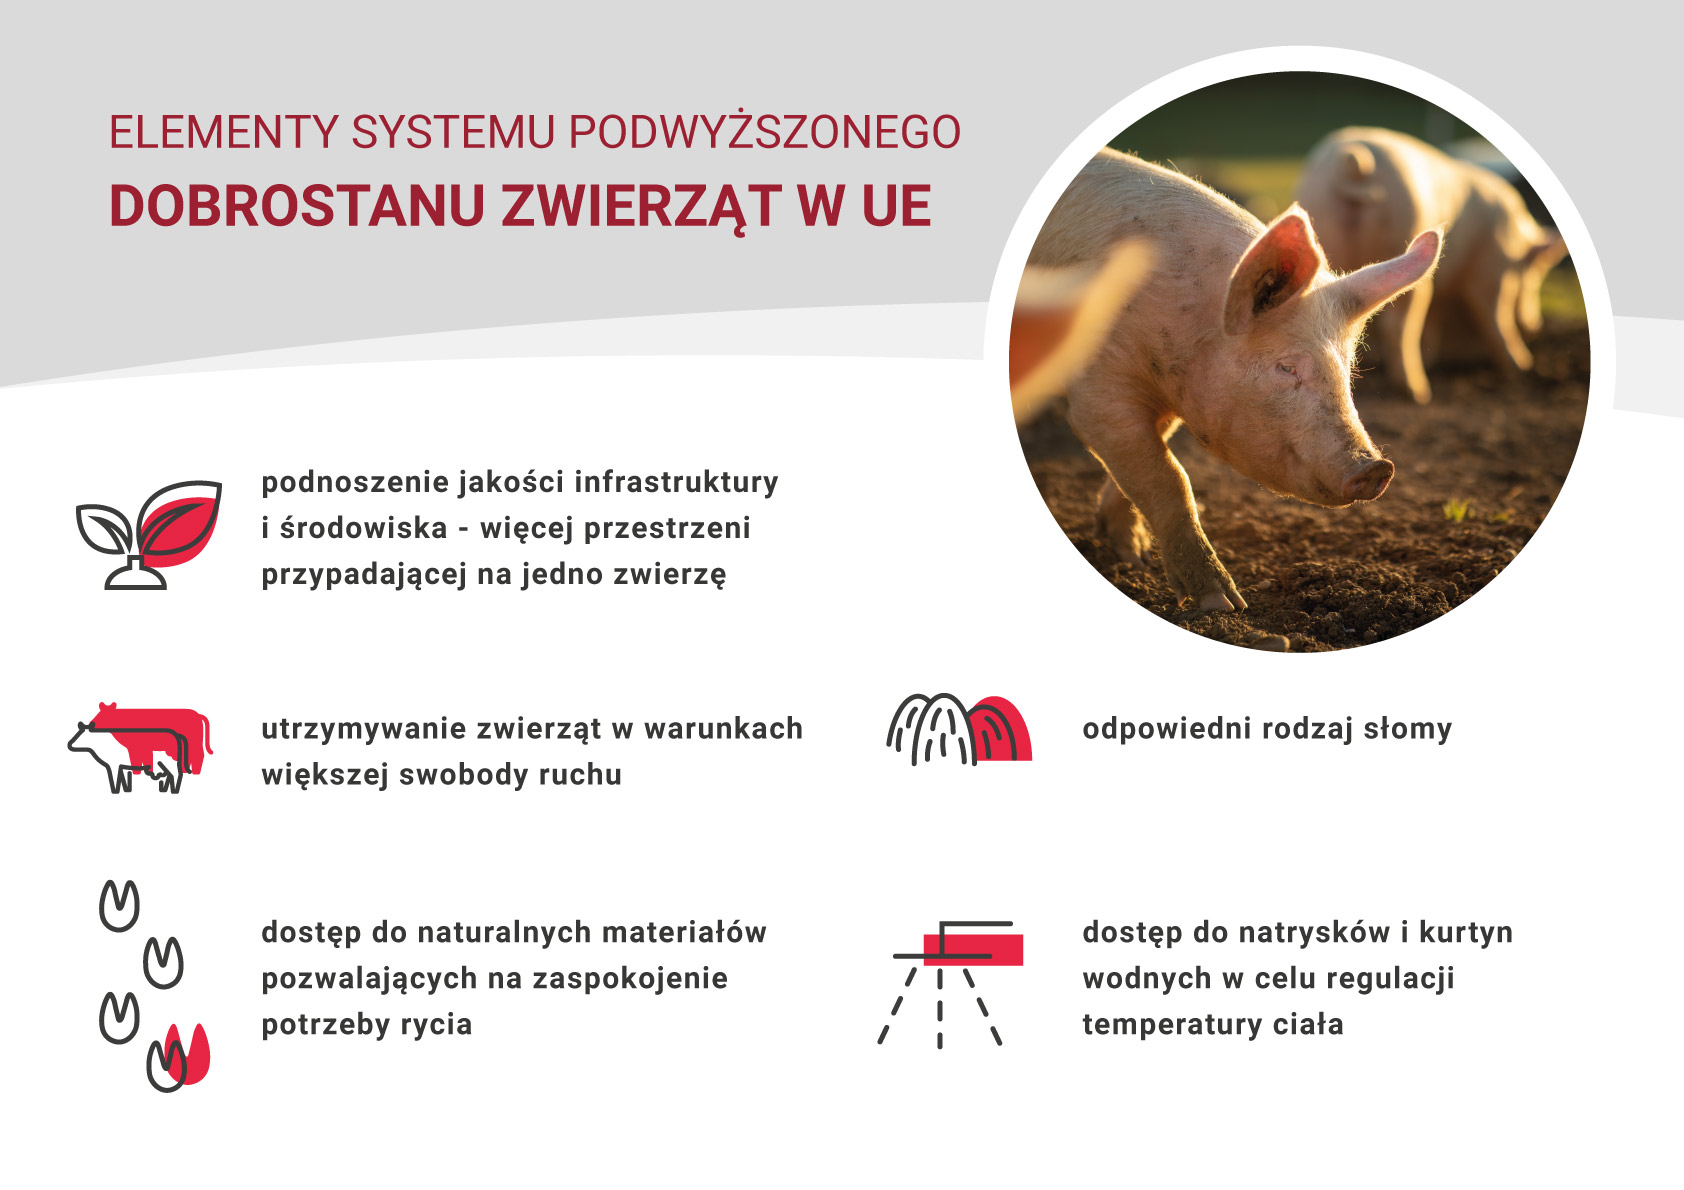 Systemy podwyższonego dobrostanu zwierząt  – wysokie standardy produkcji wieprzowiny w Unii Europejskiej